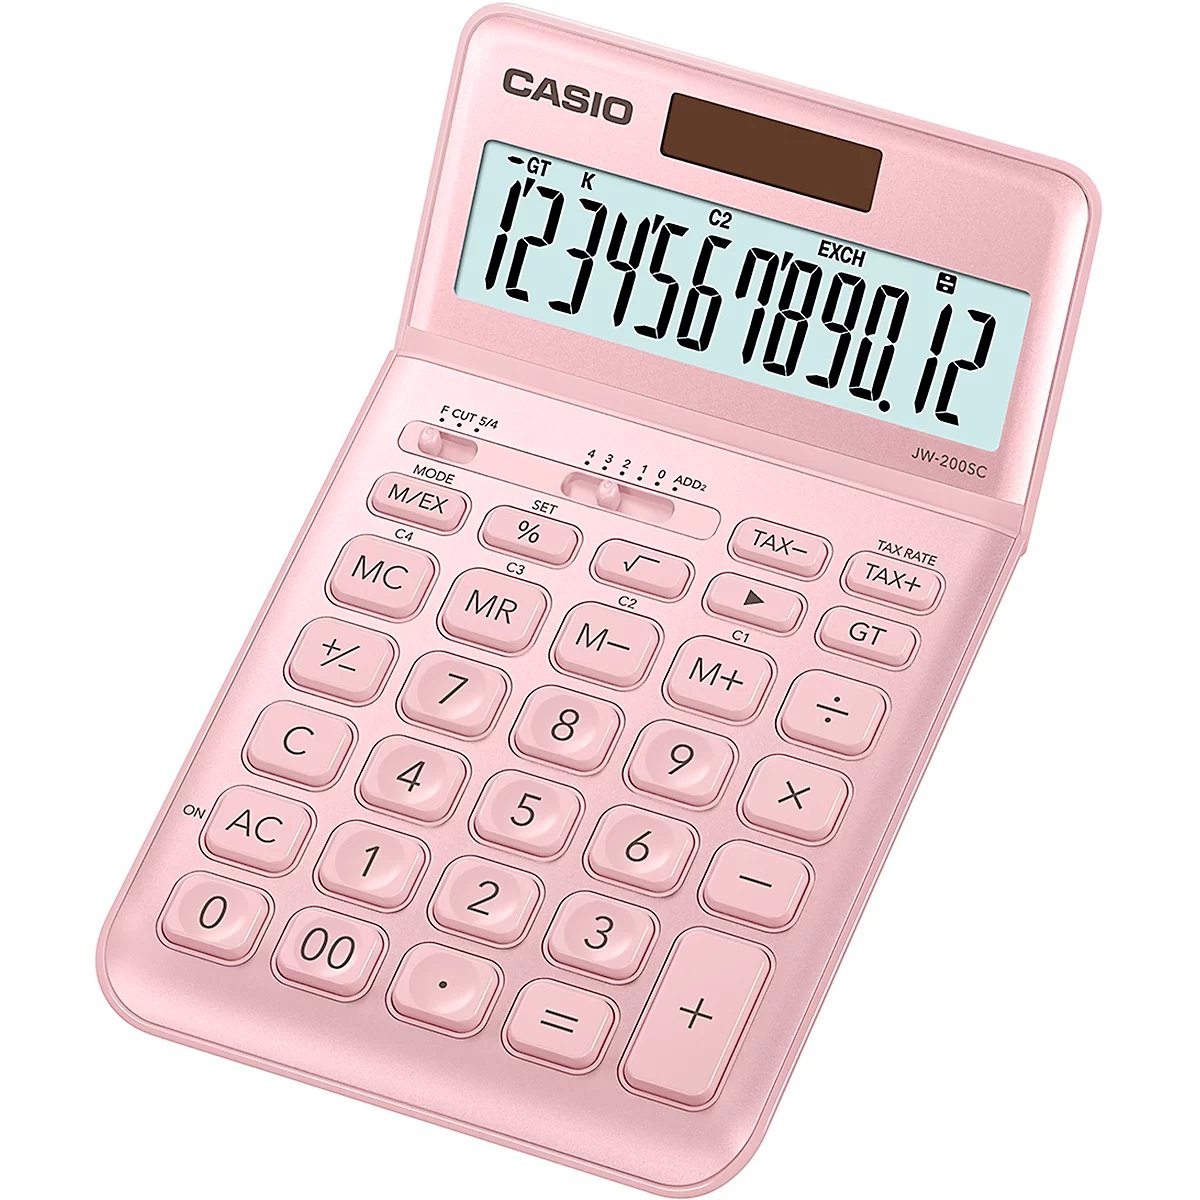 Calculatrice de bureau JW-200 SC Casio, écran LC BIG 12 chiffres